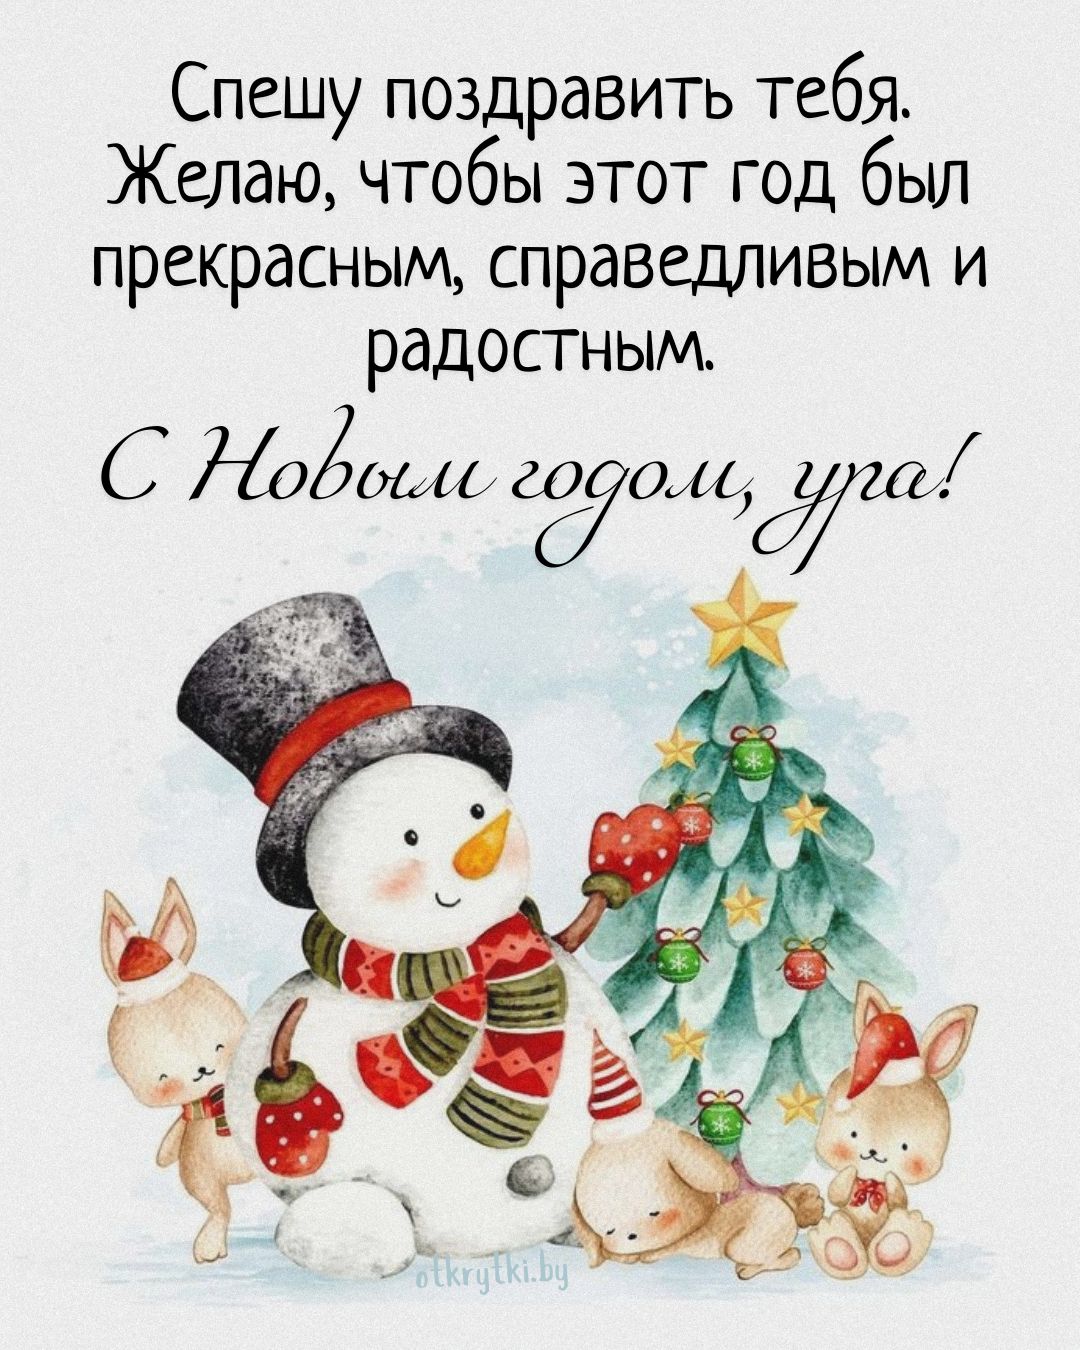 Новогодняя открытка со снеговиком и поздравлением